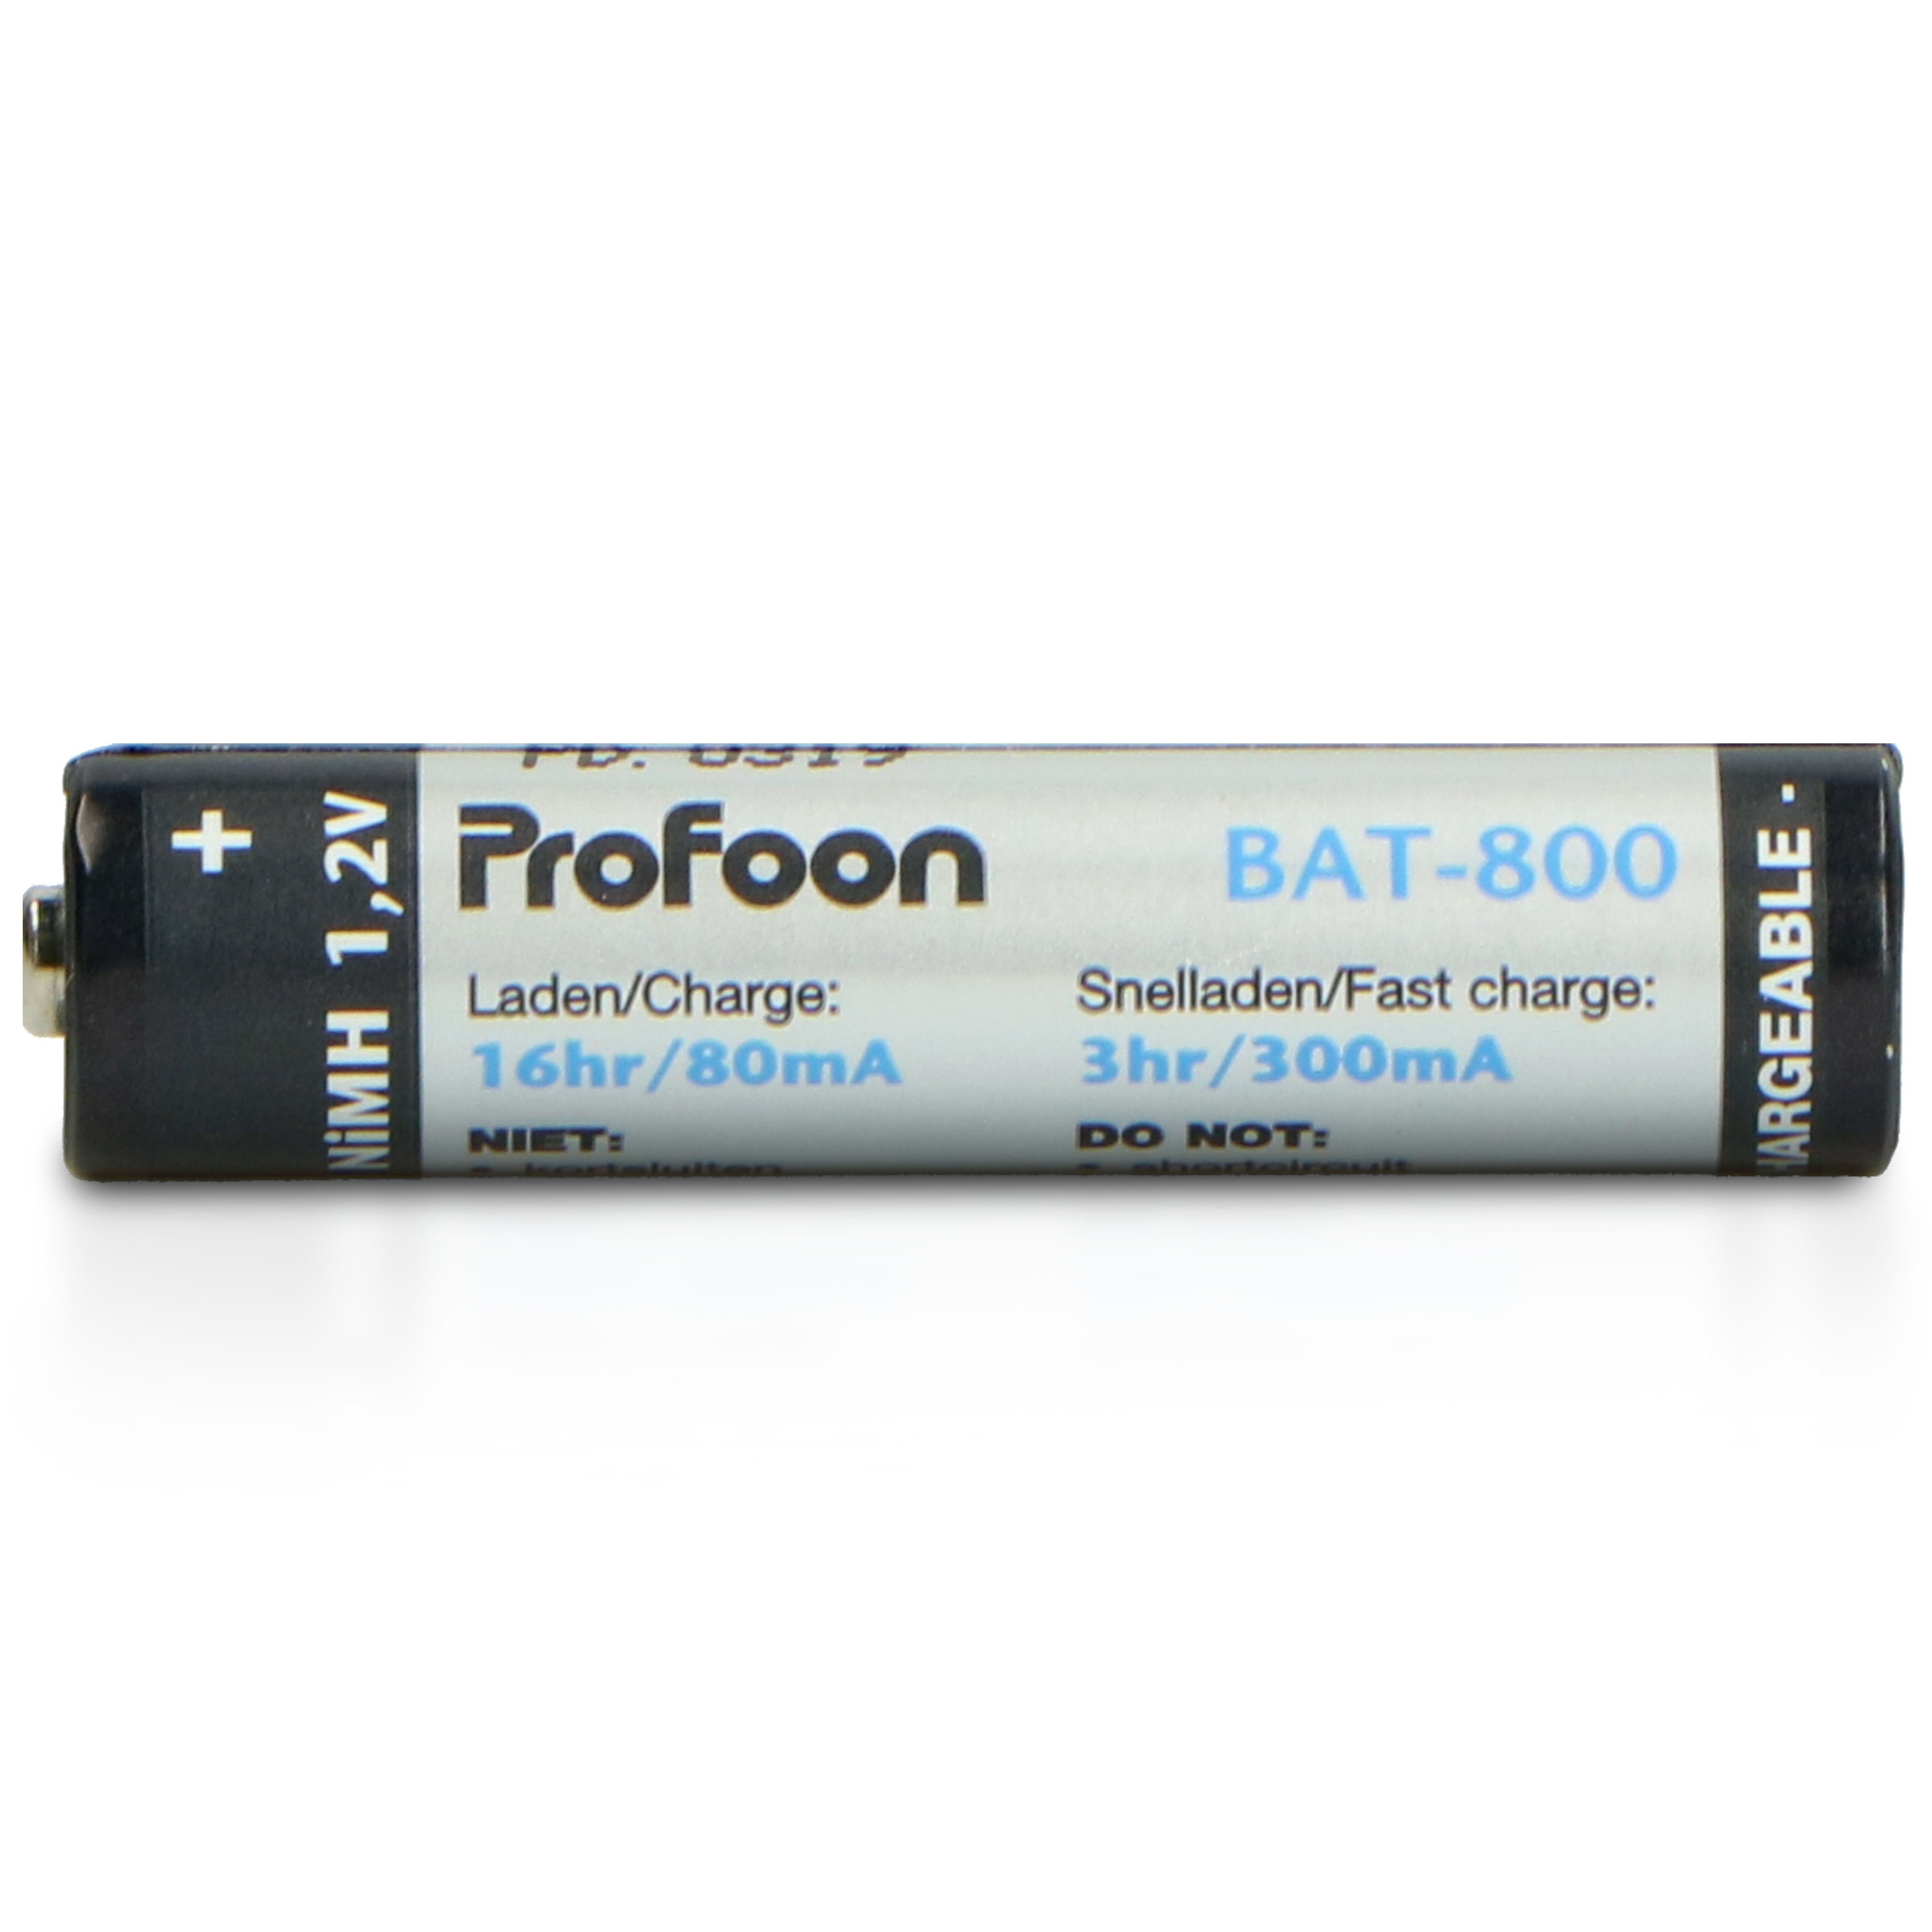 Profoon Batterie, (2 BAT-800 St)